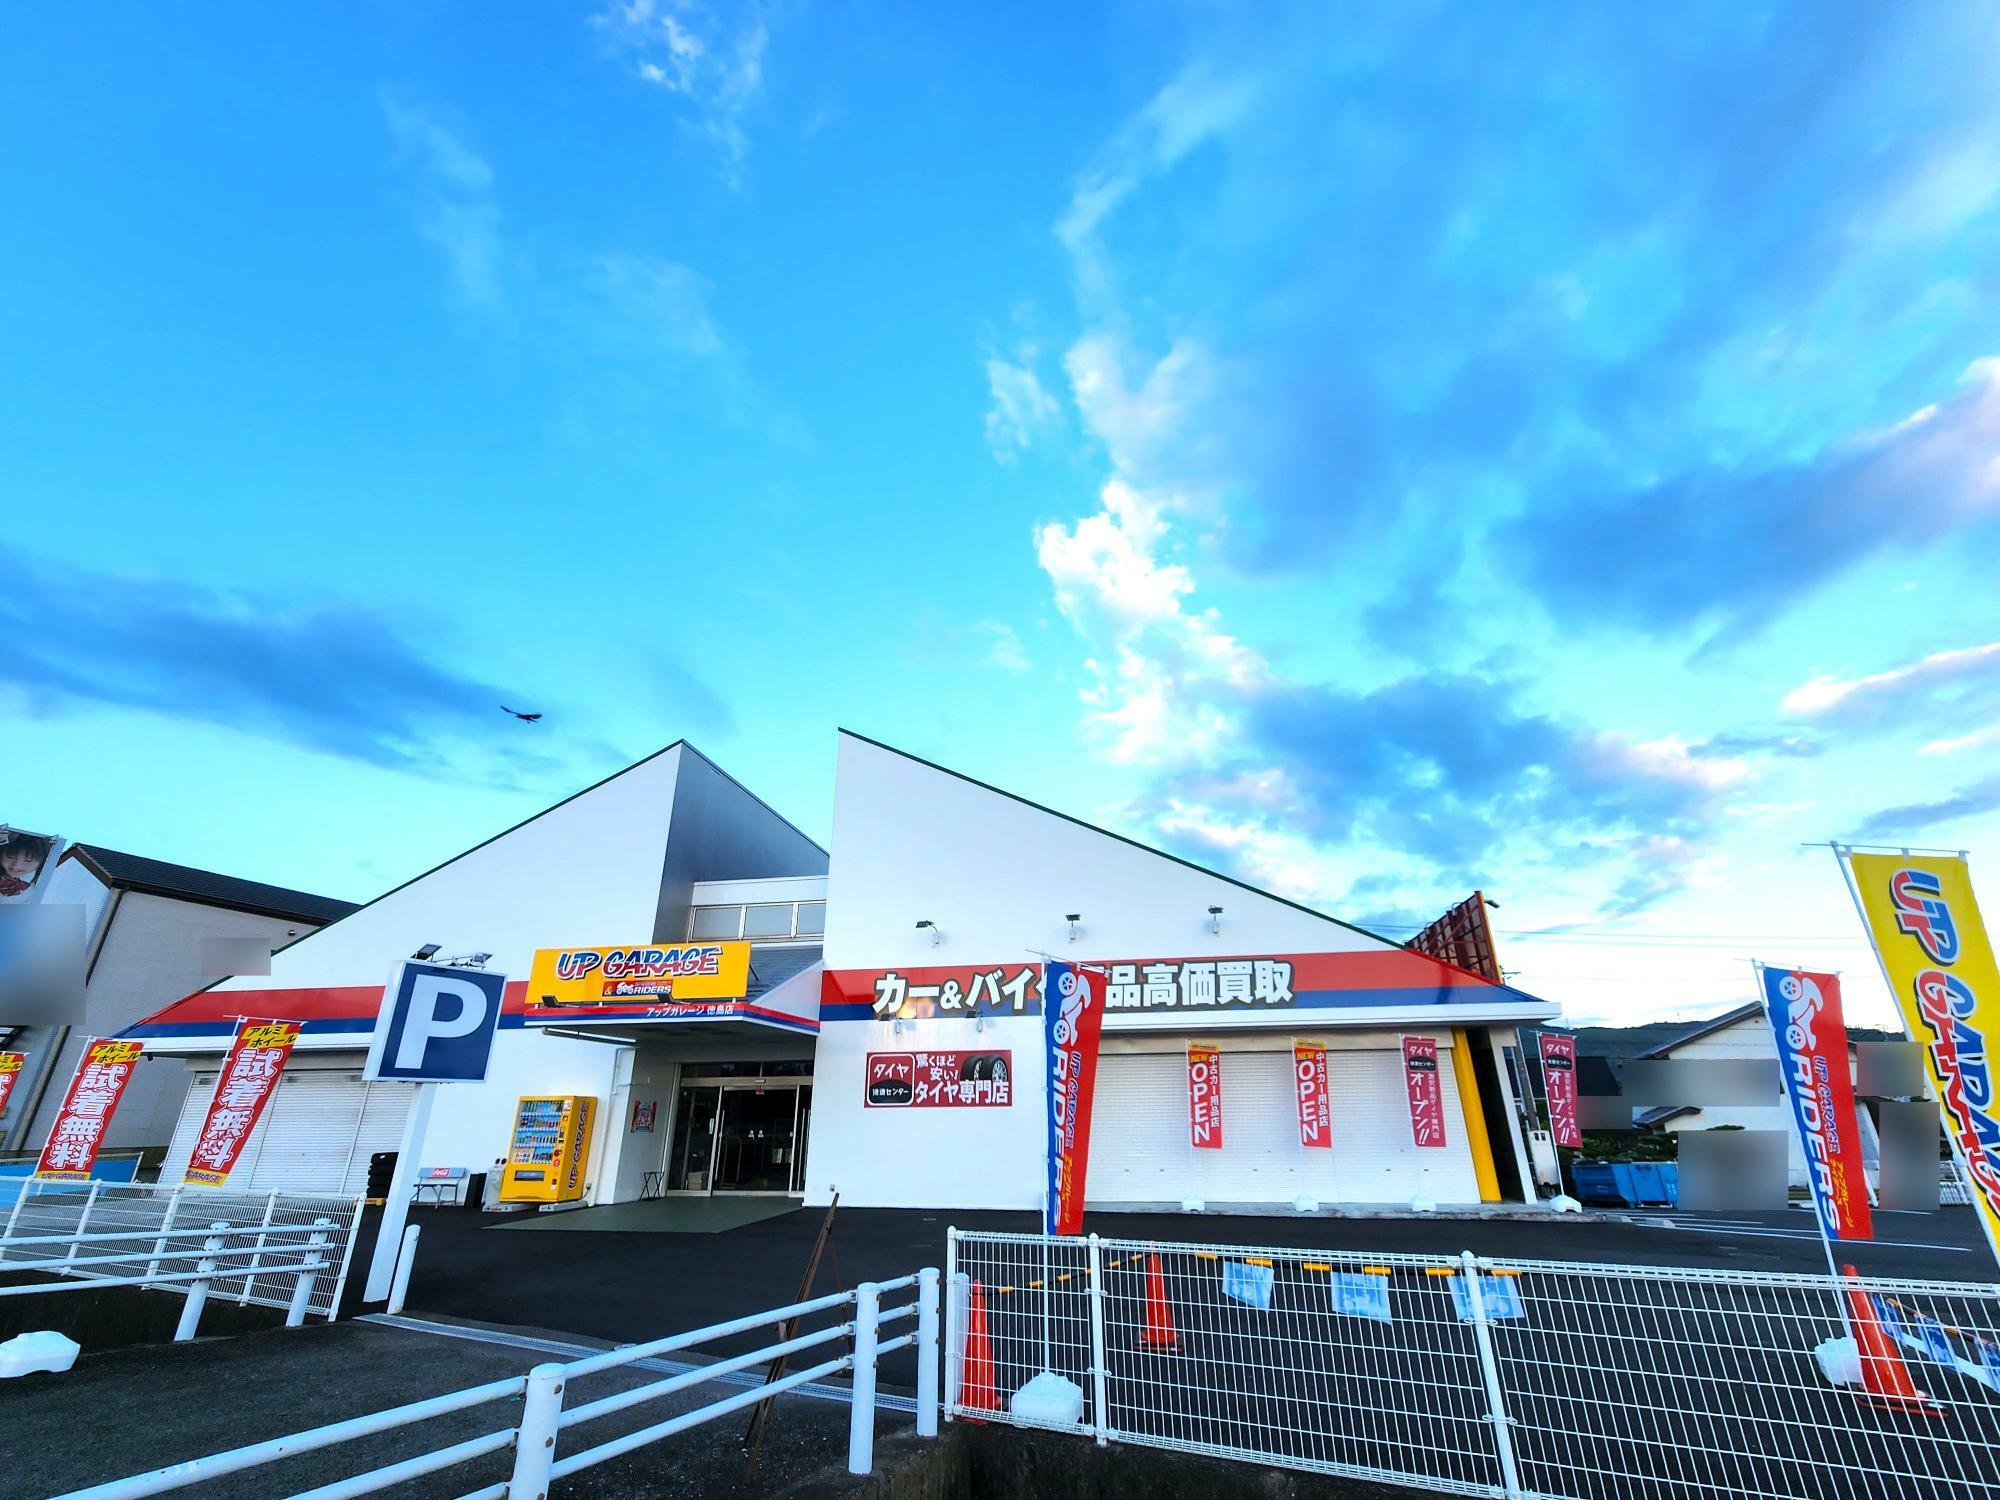 2023年9月2日オープンした「アップガレージ&アップガレージライダース徳島店」。